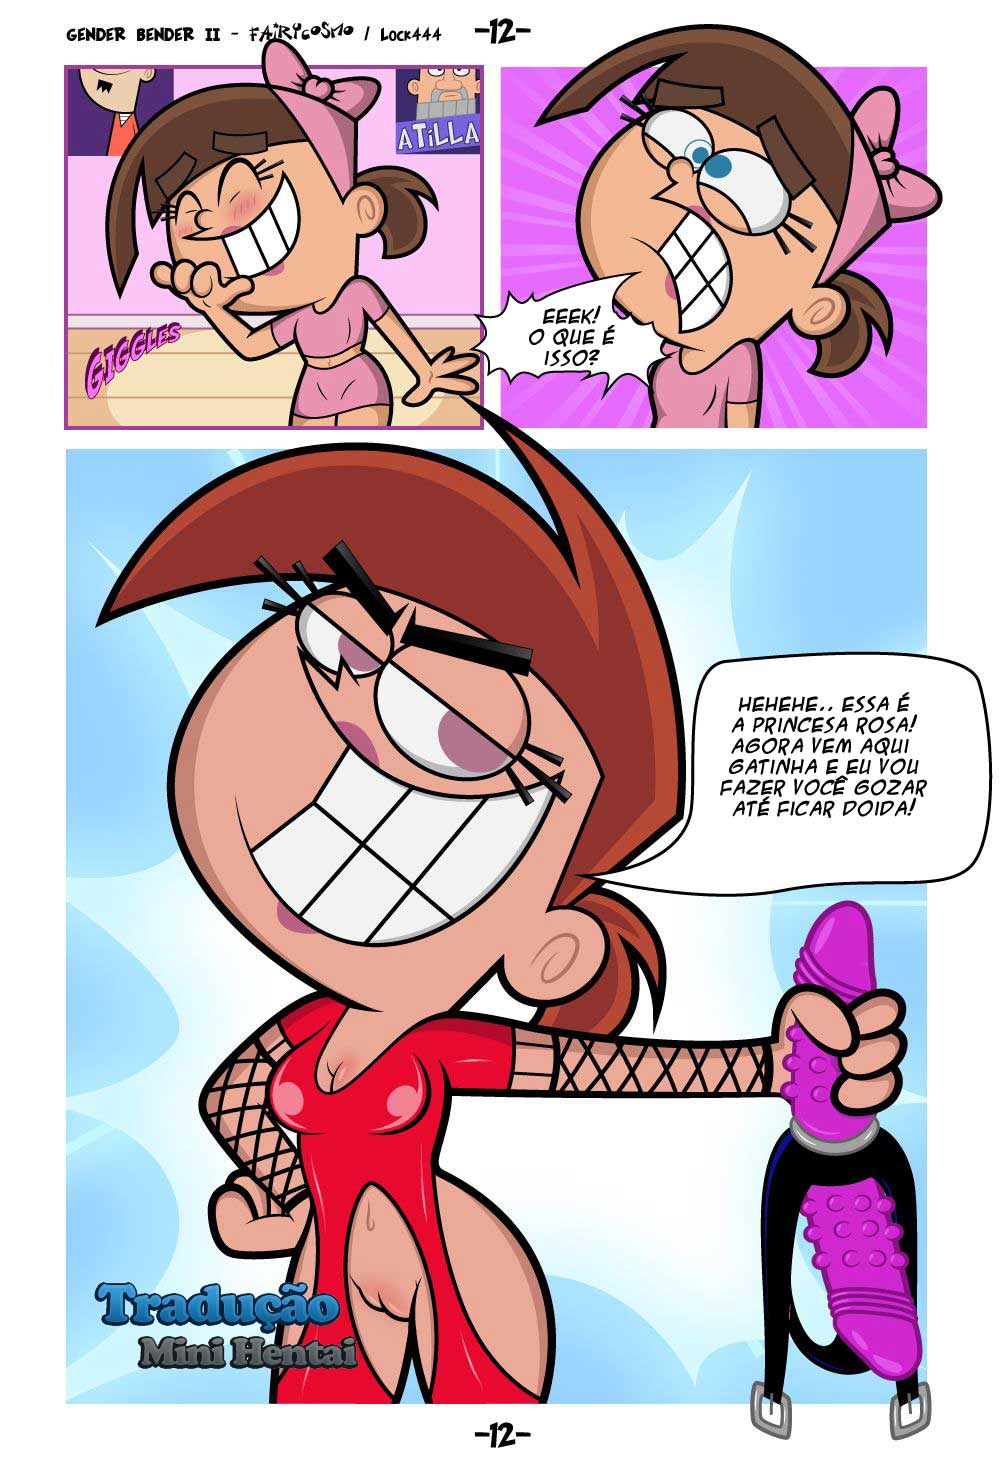 Gender Bender 02 Padrinhos Mágicos Quadrinhos Eróticos